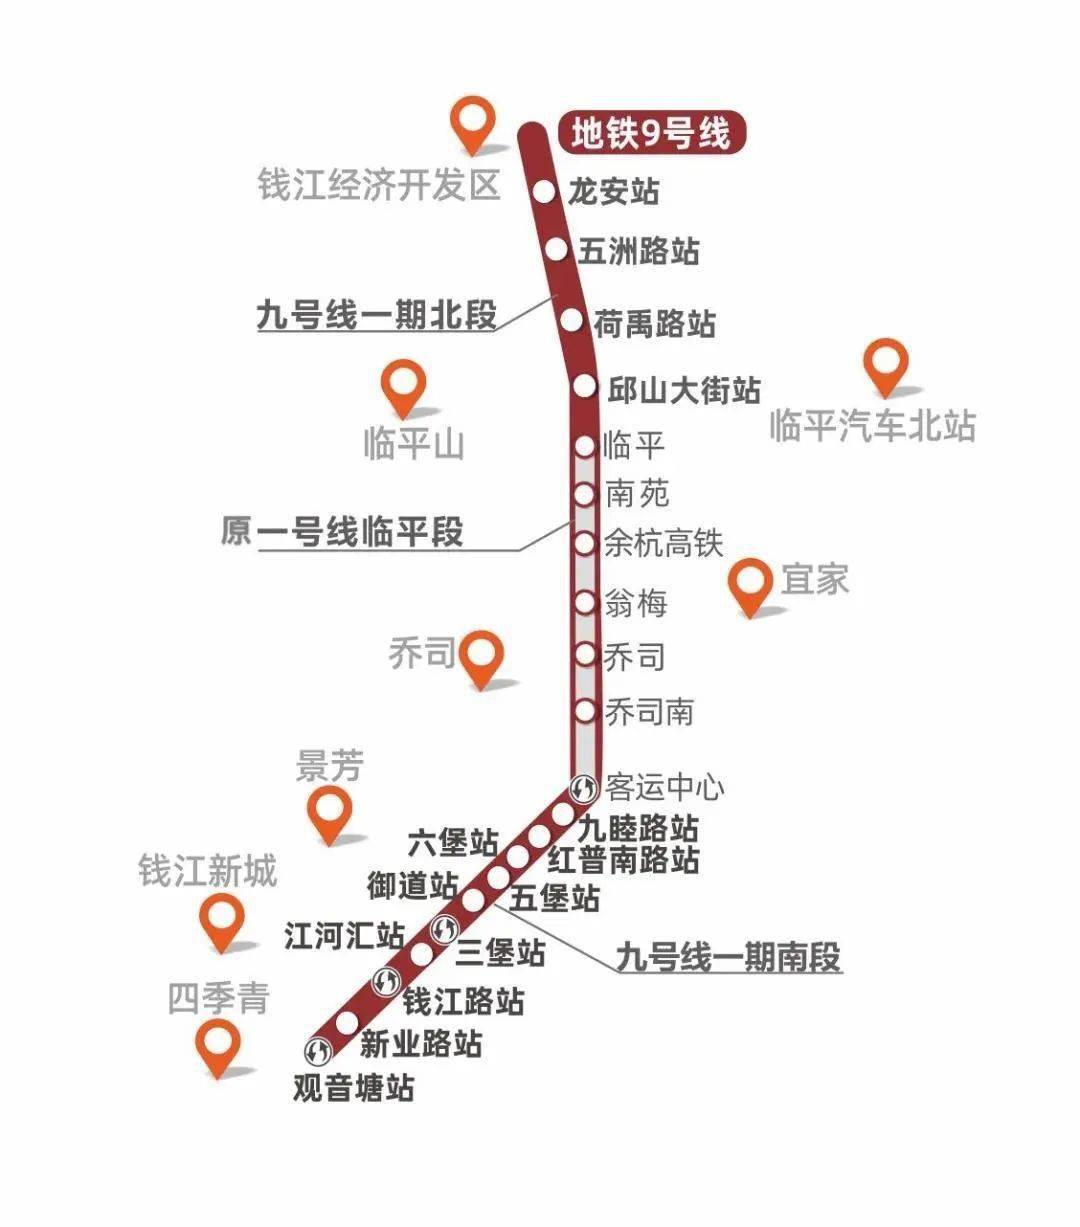 杭州机场快线明年6月开通未来可与地铁9号线换乘